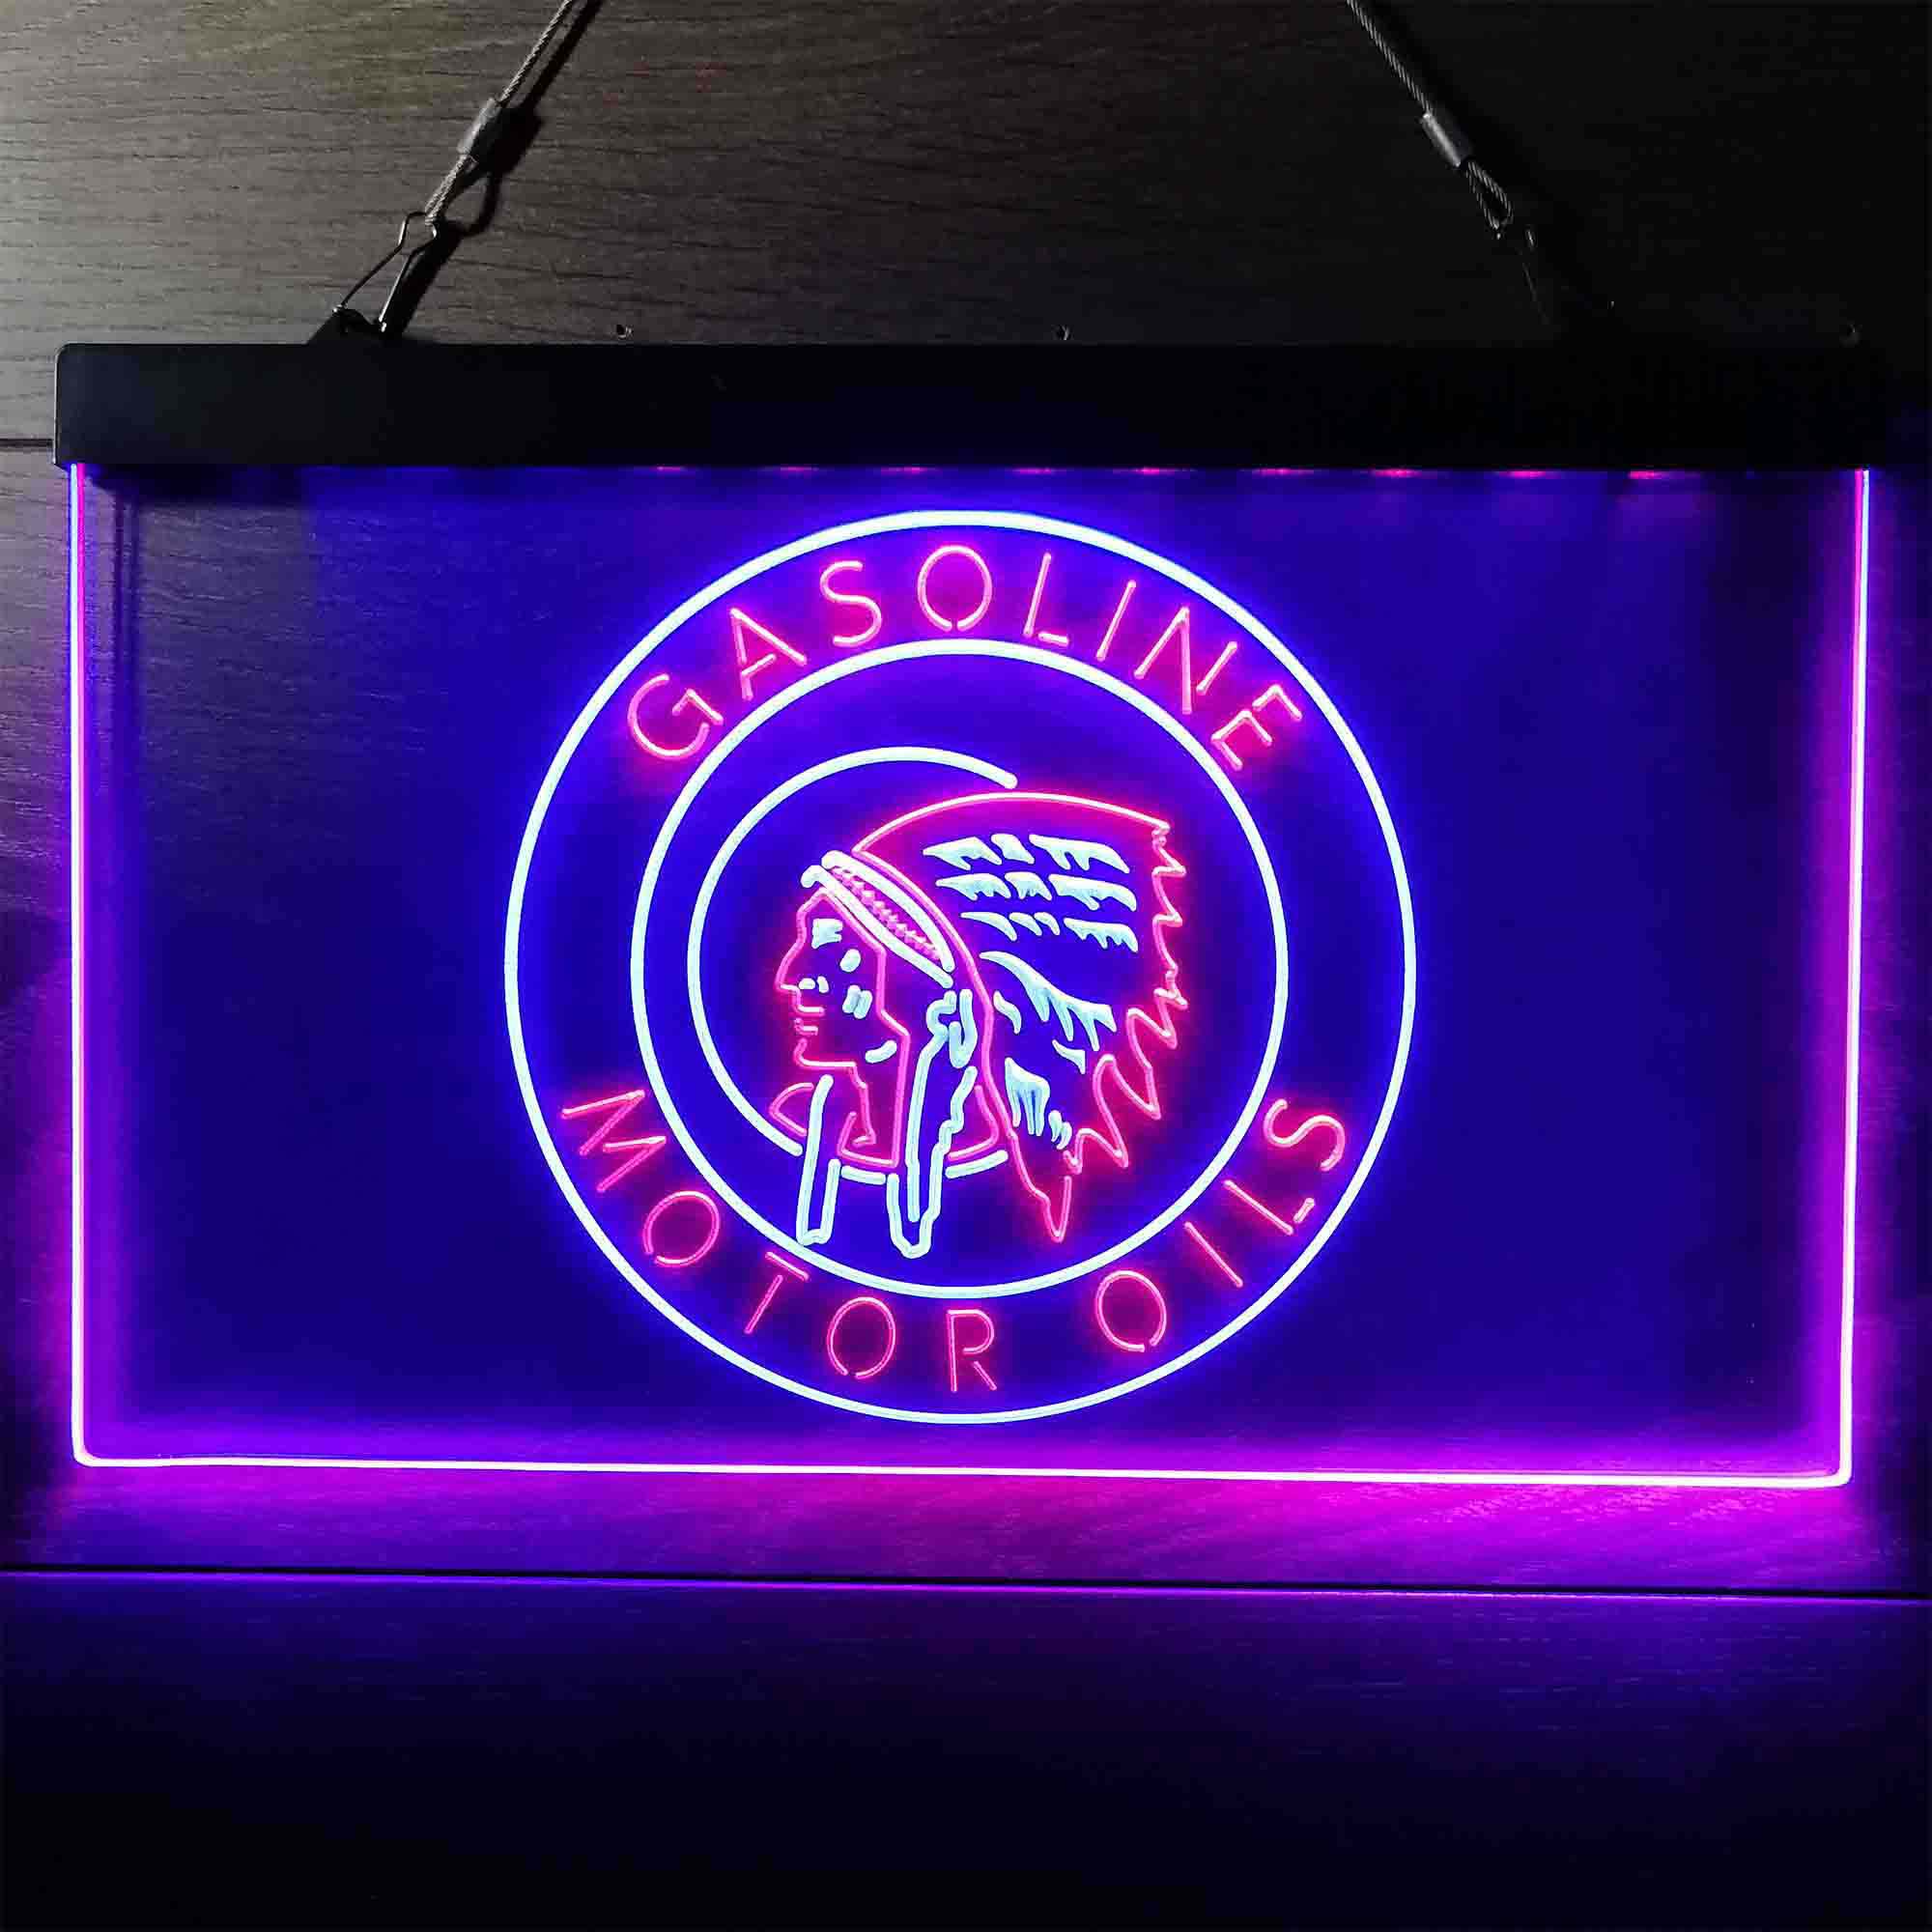 Motor Oils Gasoline Indian Neon-Like LED Sign